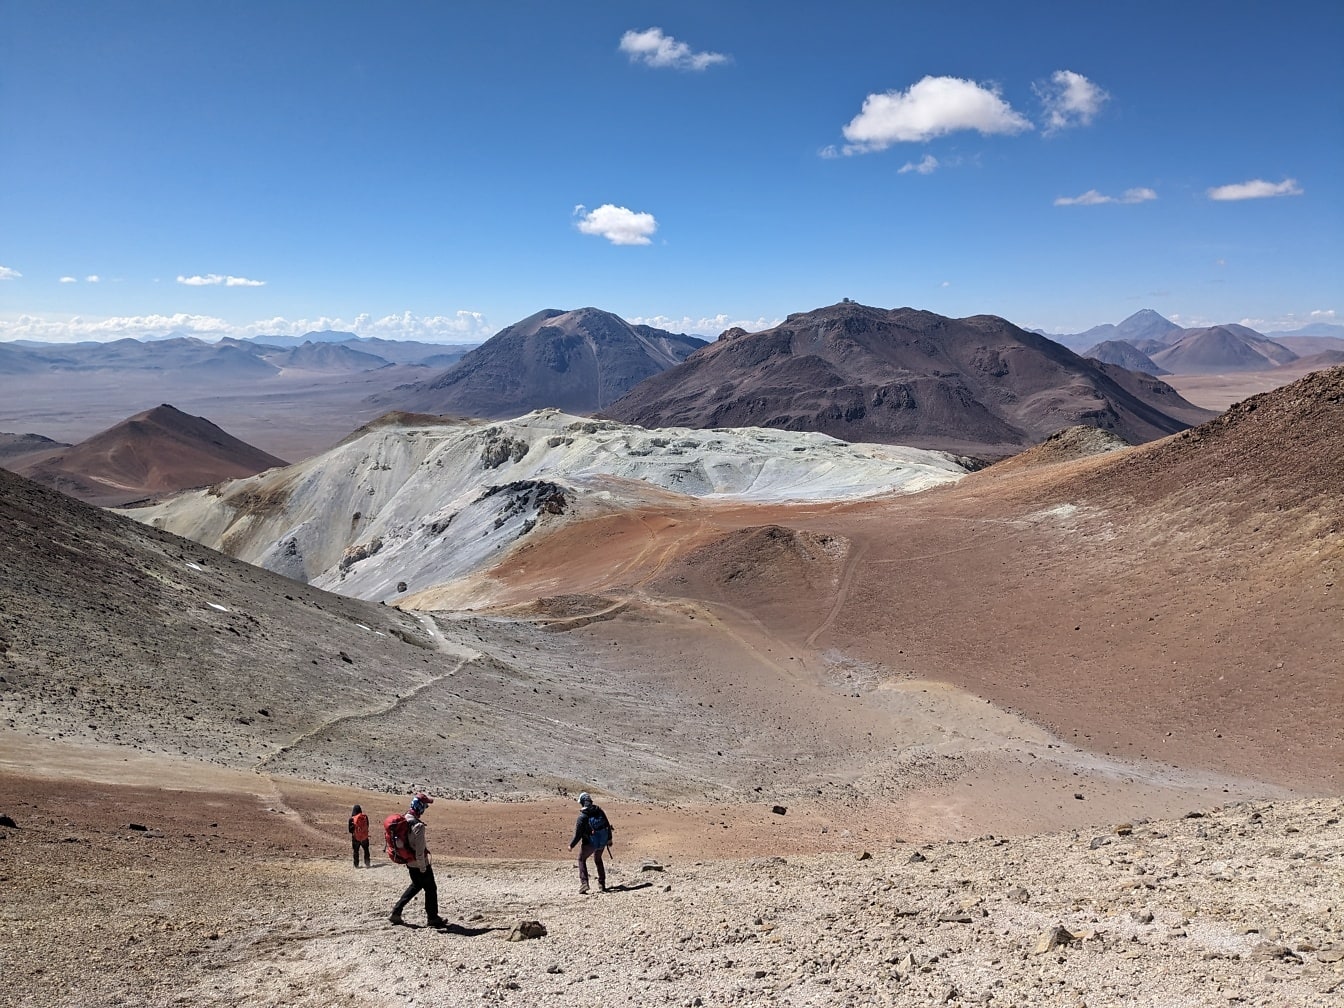 Άνθρωποι περπατούν στην κορυφή ενός βουνού της ερήμου Cerro Toco στη Χιλή